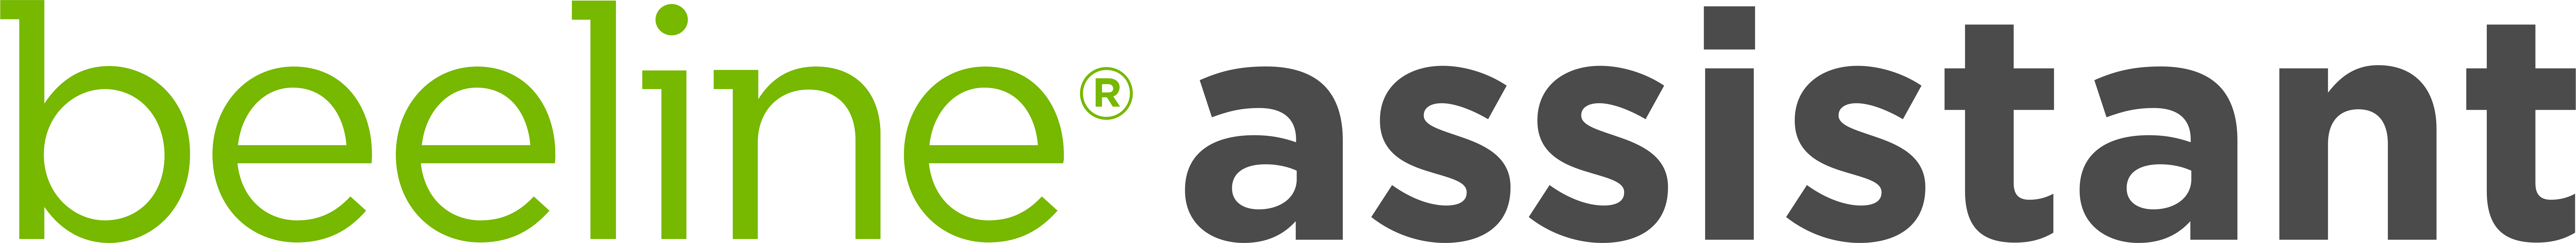 beeline assistant logo